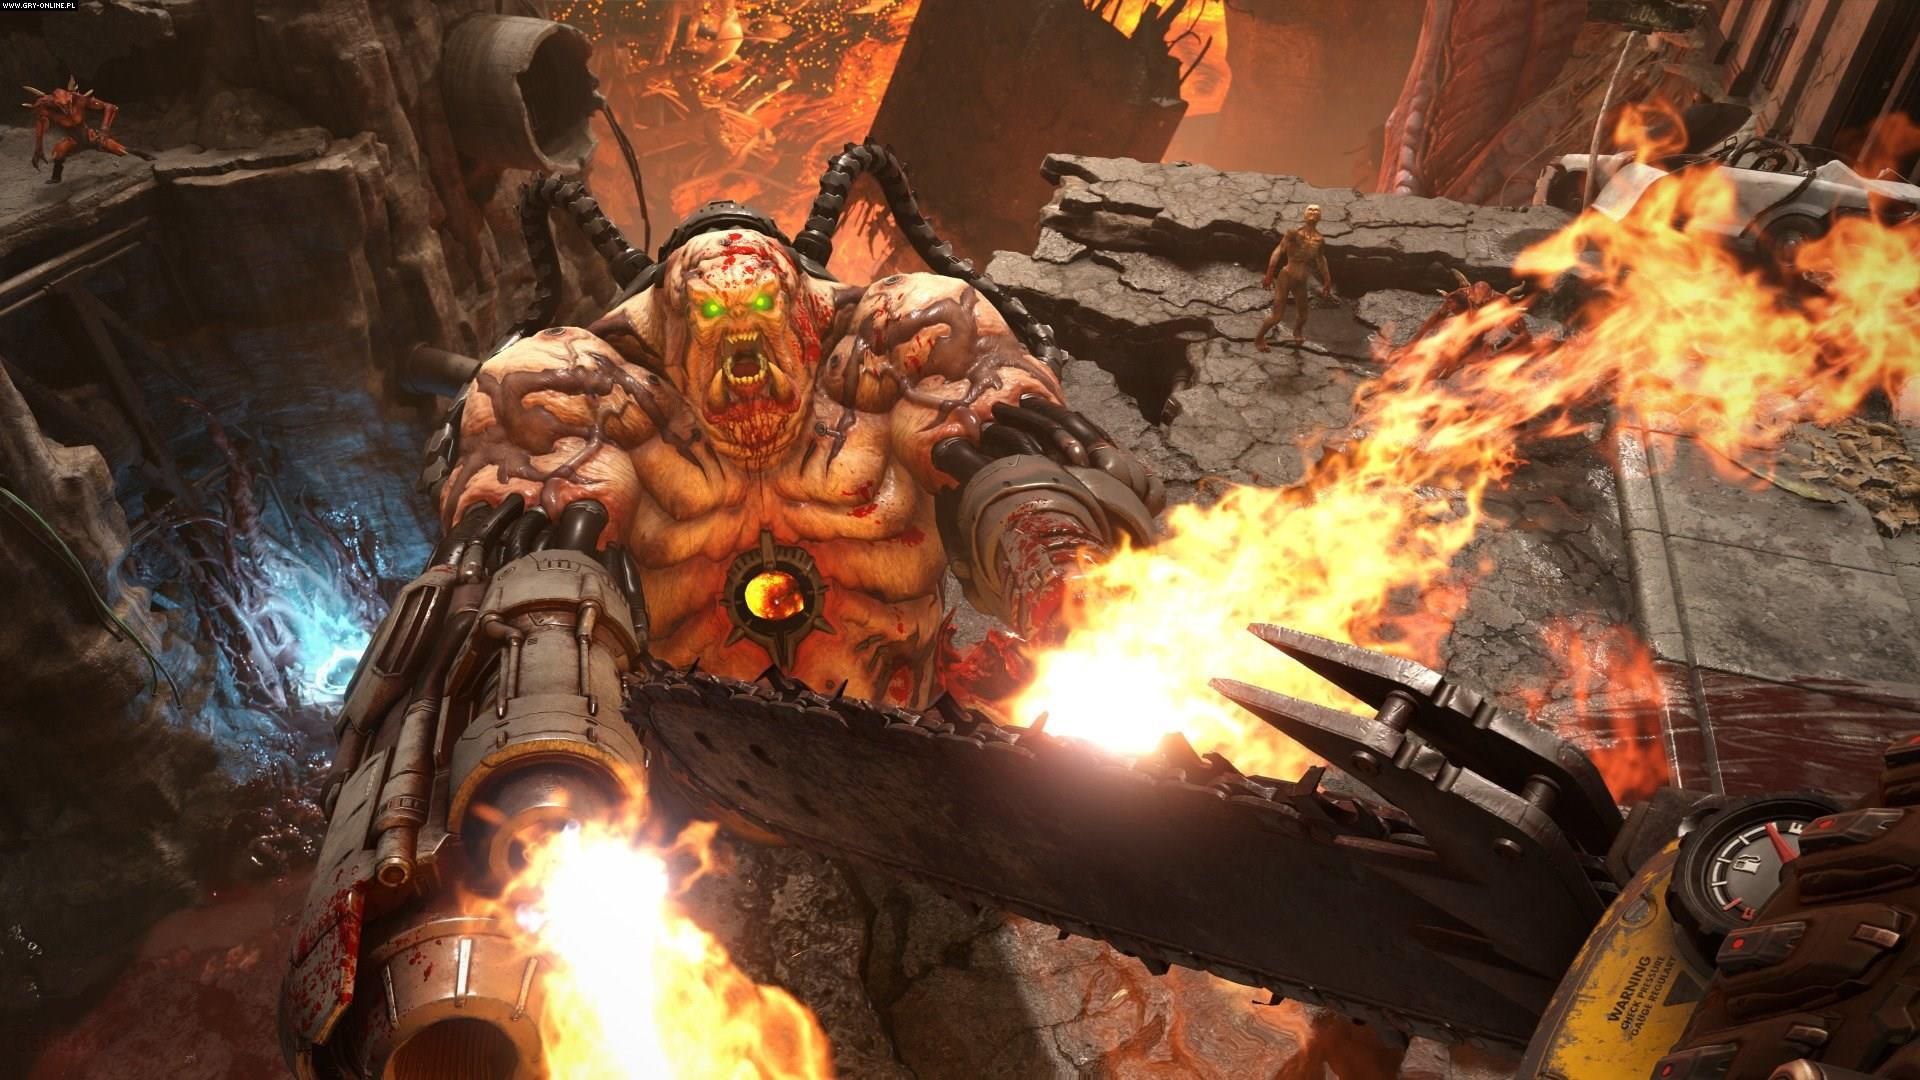 Doom: Eternal (Gra PS4)